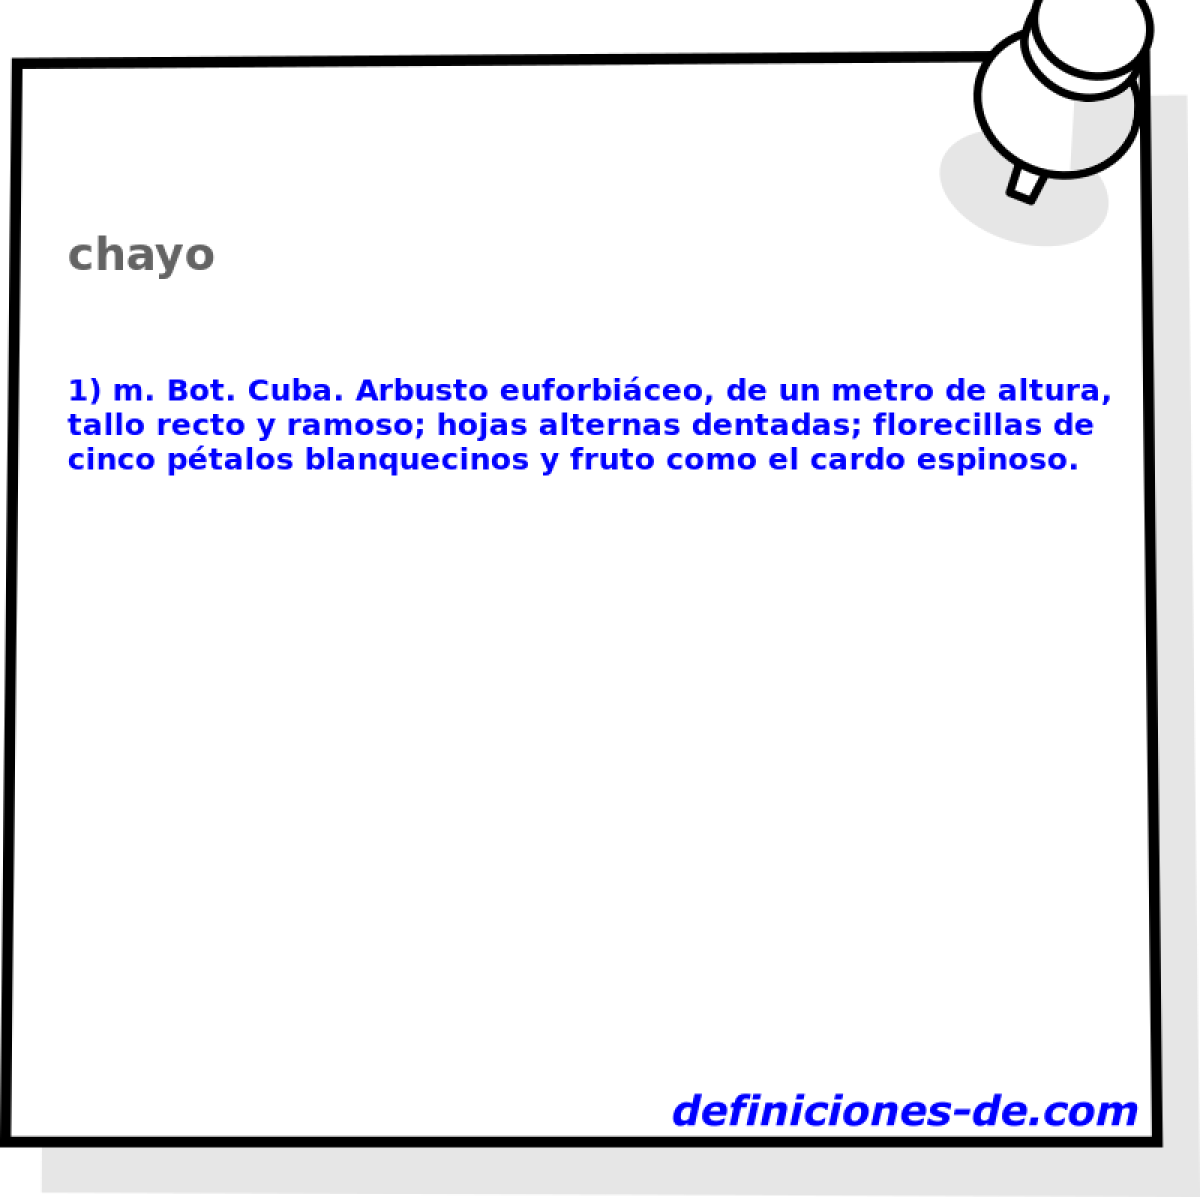 chayo 